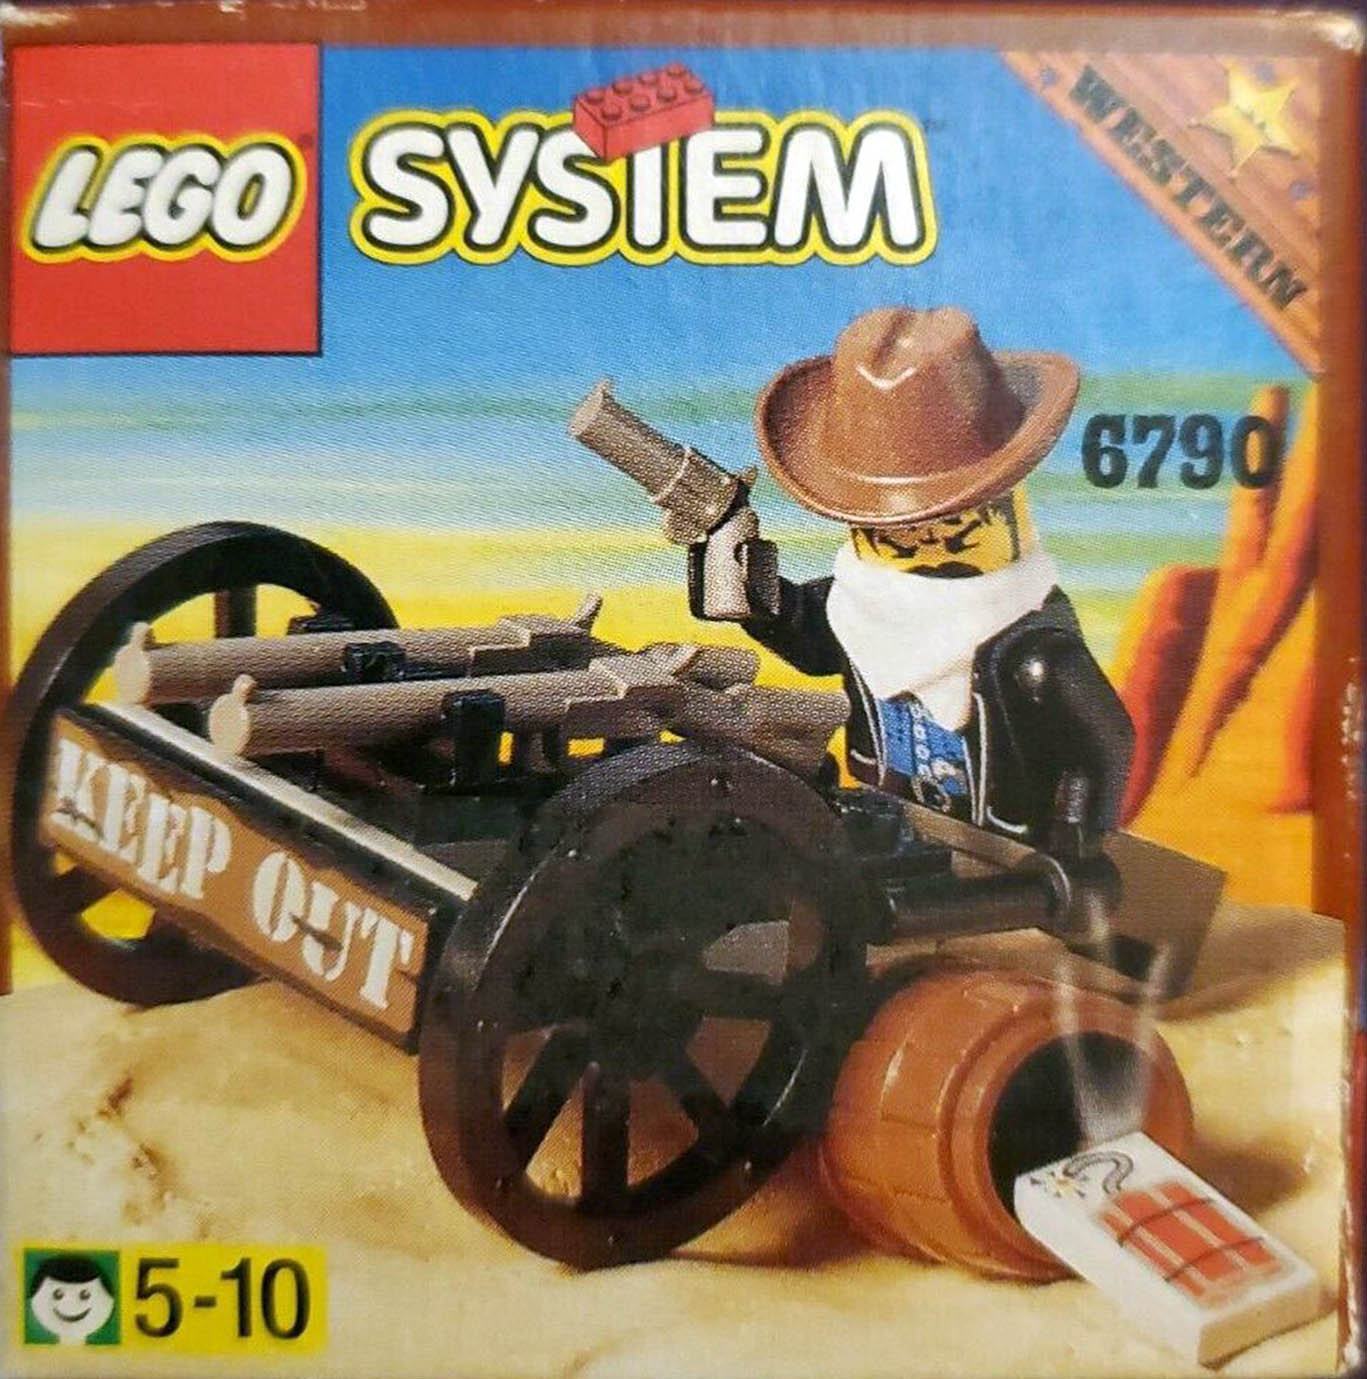 6790: Bandit’s Wheelgun